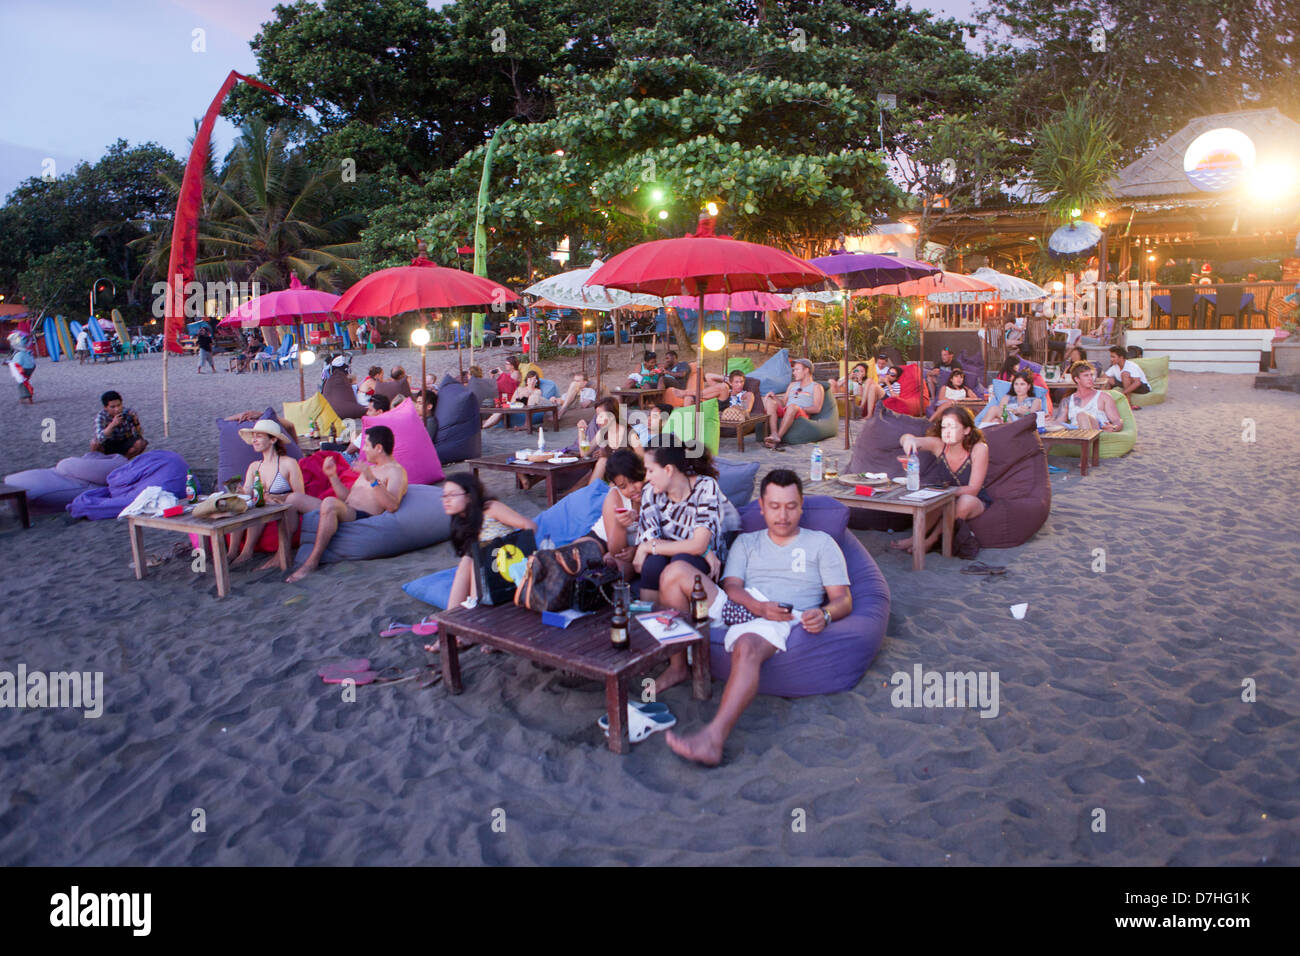 Seminyar sur Bali est une destination populaire de vacances Banque D'Images